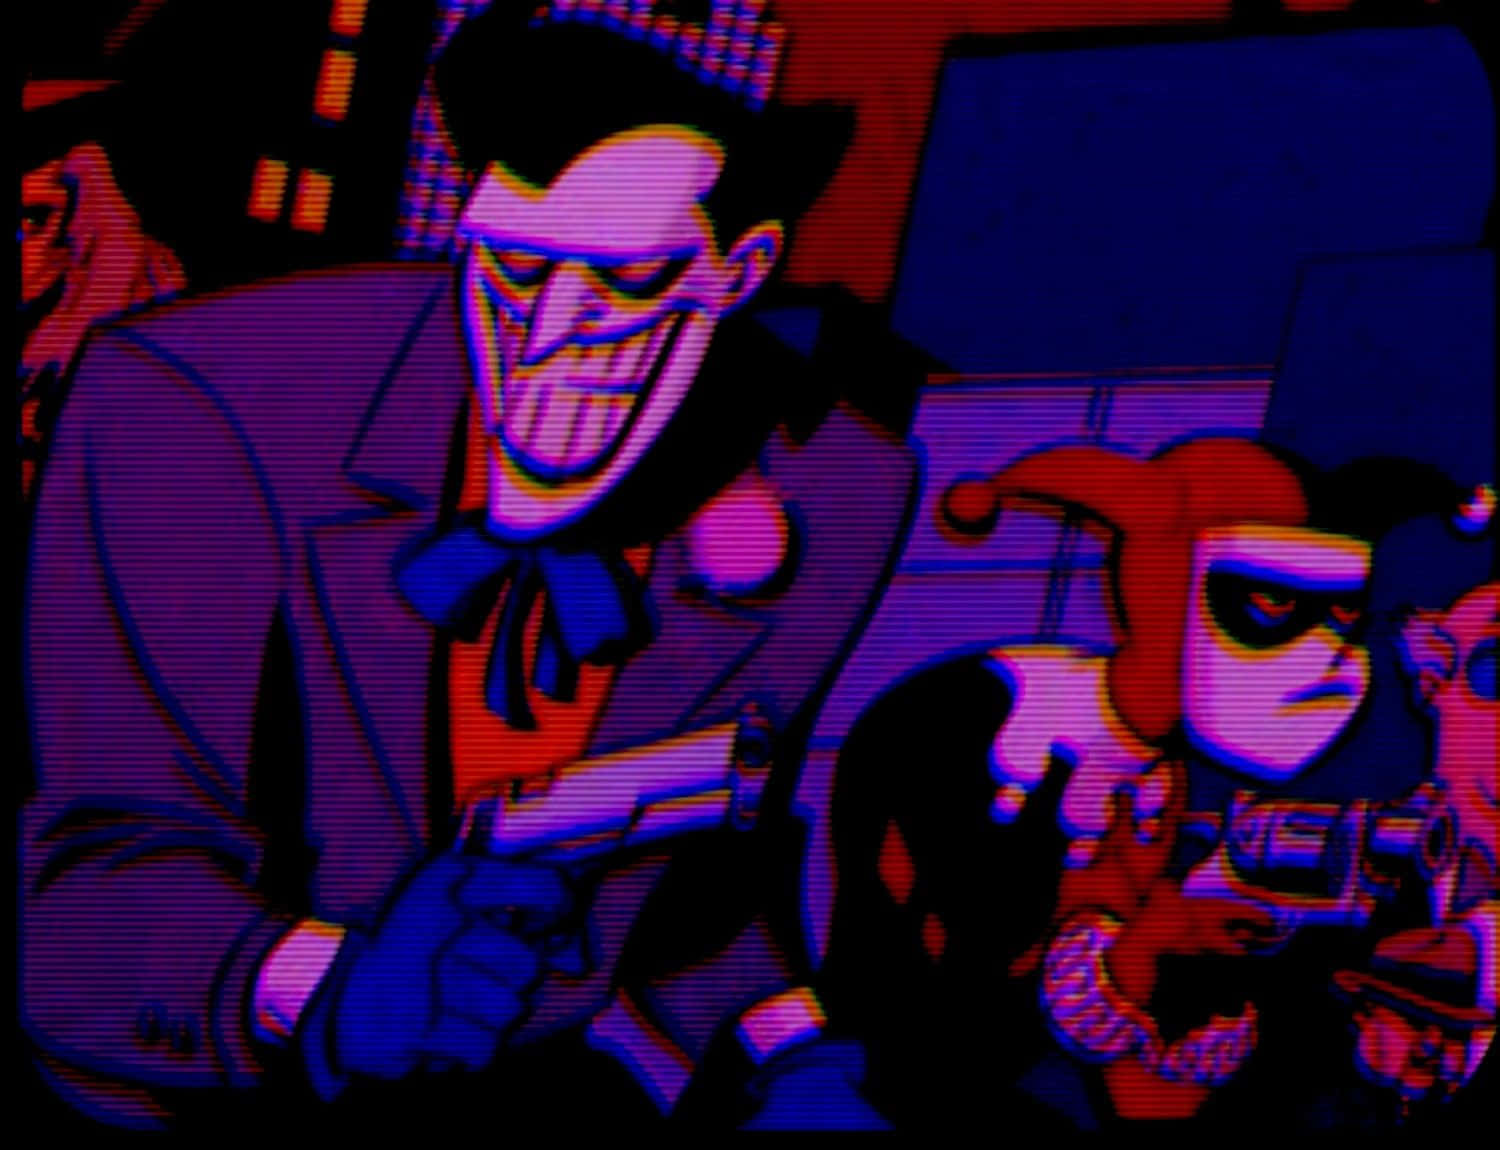 Cartoon Joker Pfp With Harley Quinn Wallpaper